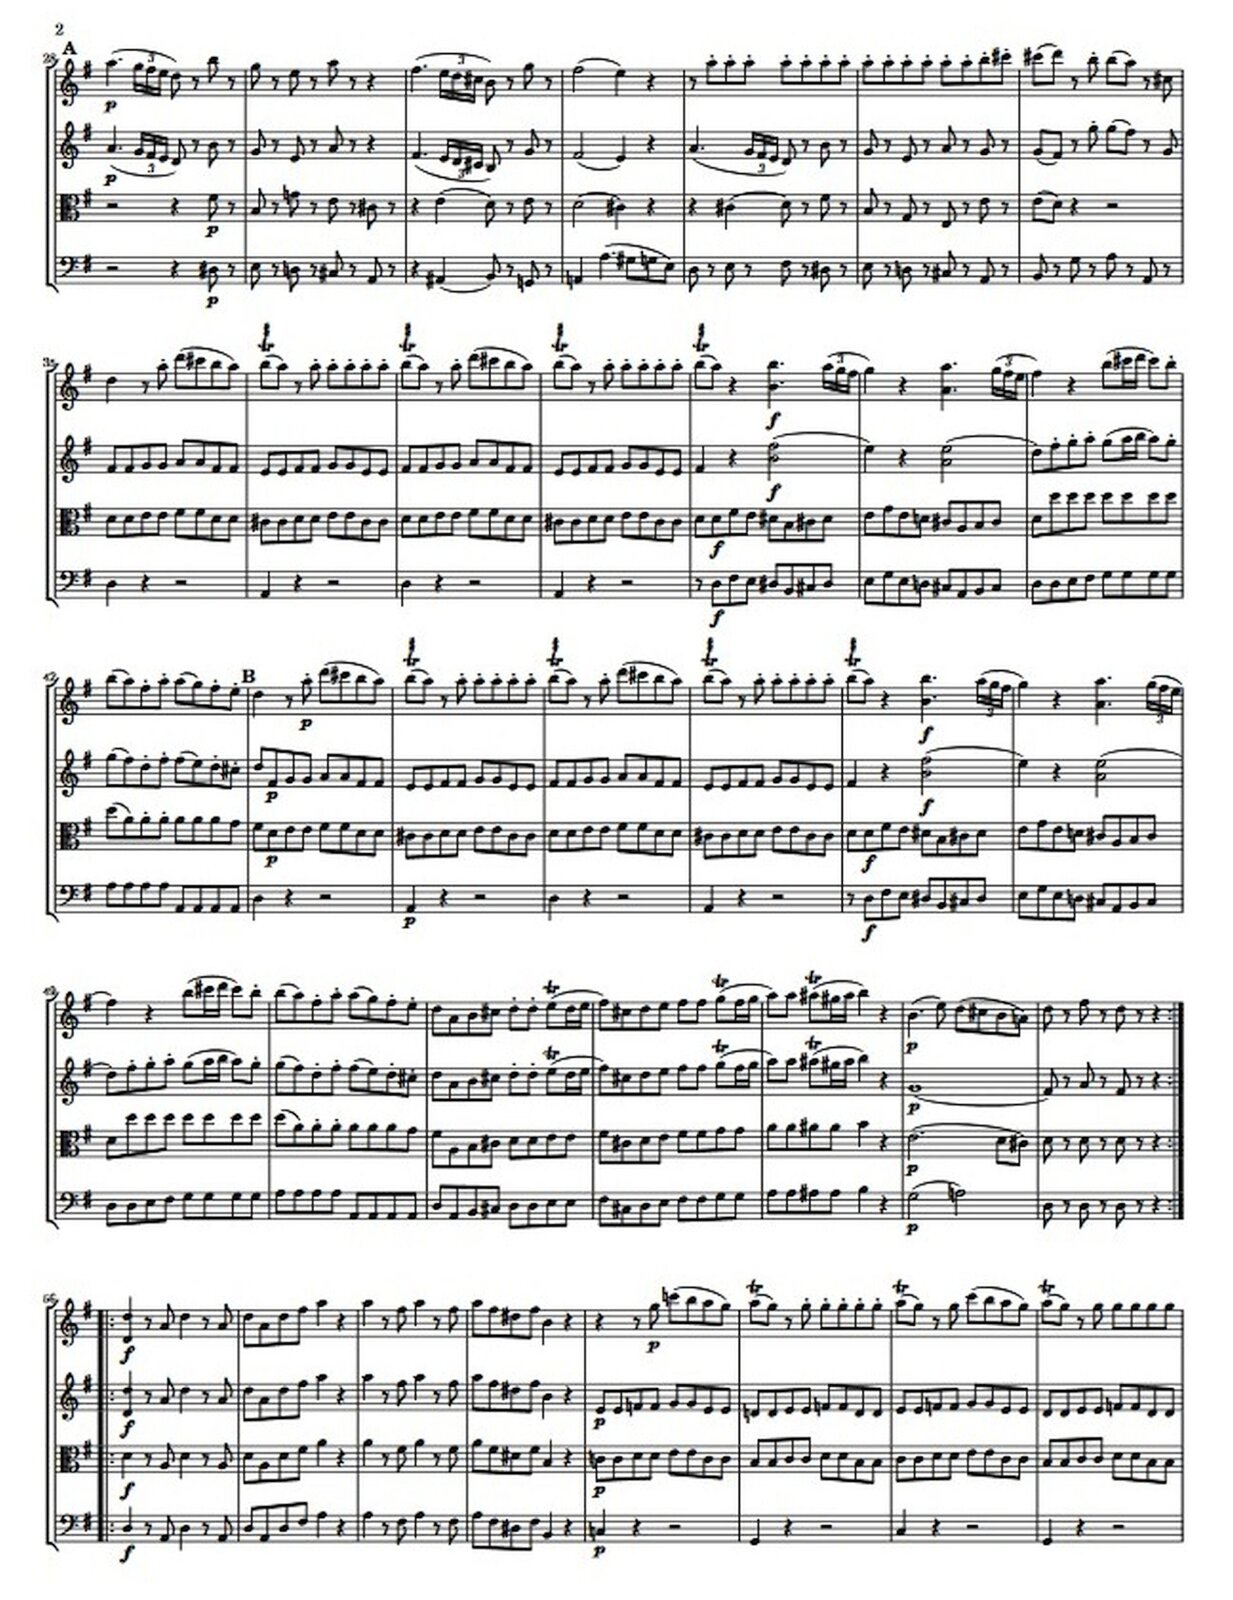 Zdjęcie przedstawia graficzny utwór muzyczny. Fotografia ukazuje czarną pięciolinię z nutami, na białej stronie utworu W.A. Mozart, „Serenada G-dur Eine kleine Nachtmusik” KV 525.